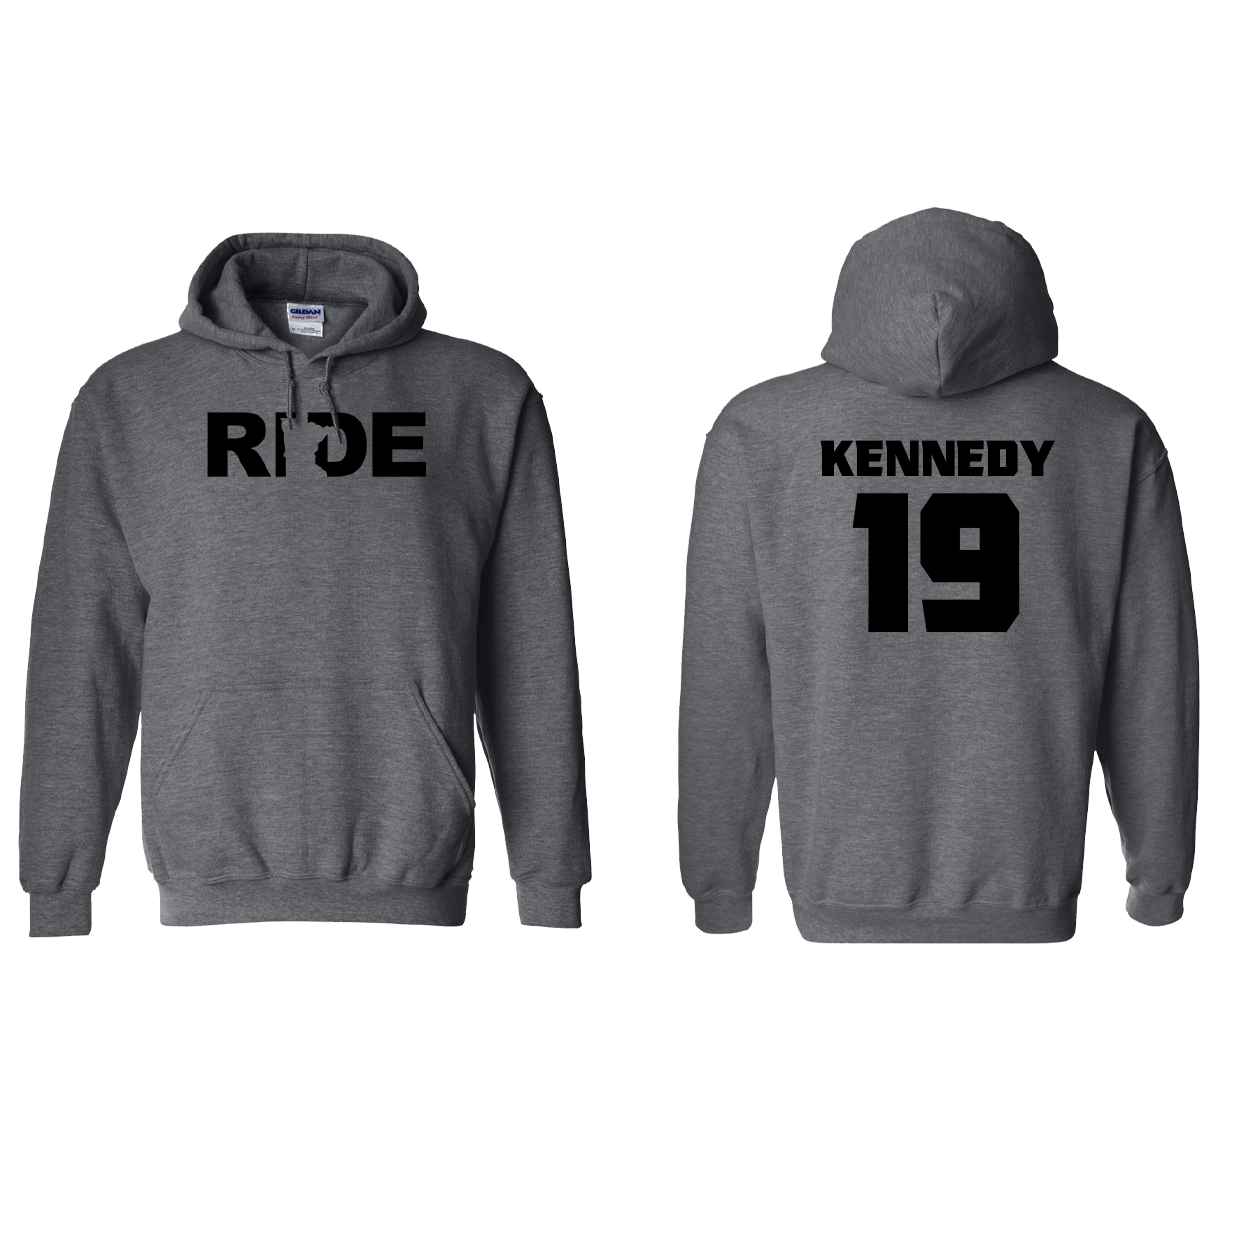 FXR BMX Race Team Classic Athlete Support Sweatshirt KENNEDY #19 Dark Heather (Black Logo)